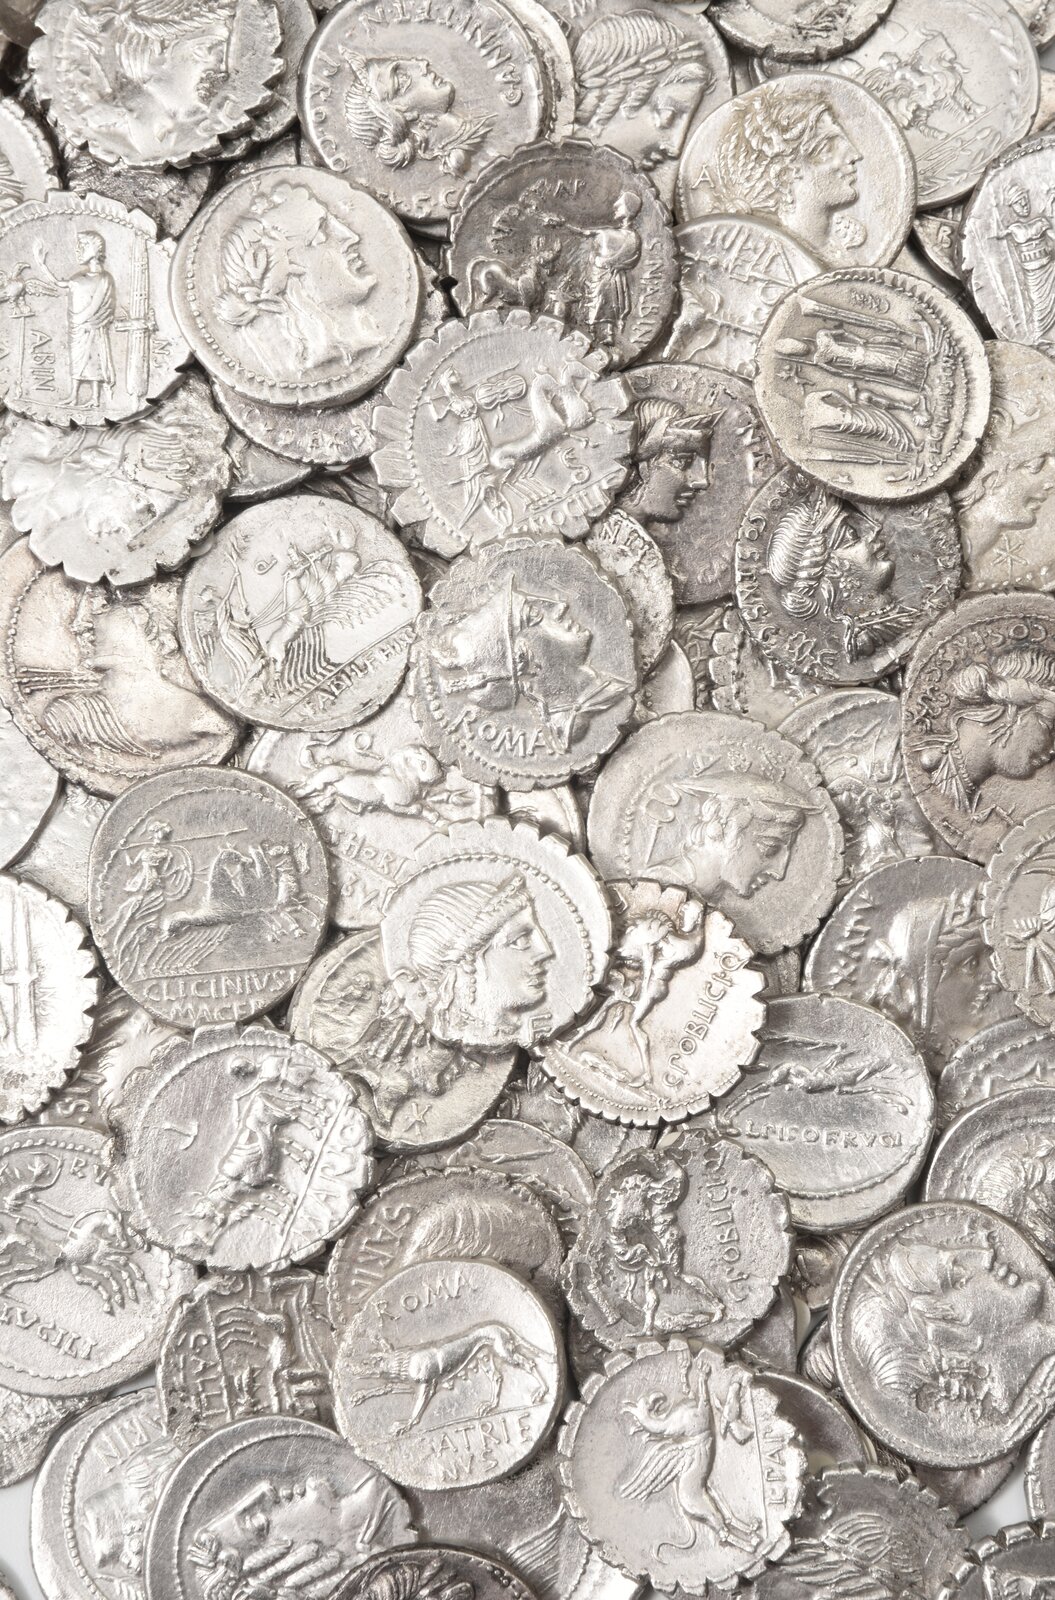 Ilustracja przedstawia stos srebrnych monet. Monety przedstawiają starożytne postacie oraz motywy zwierzęce.